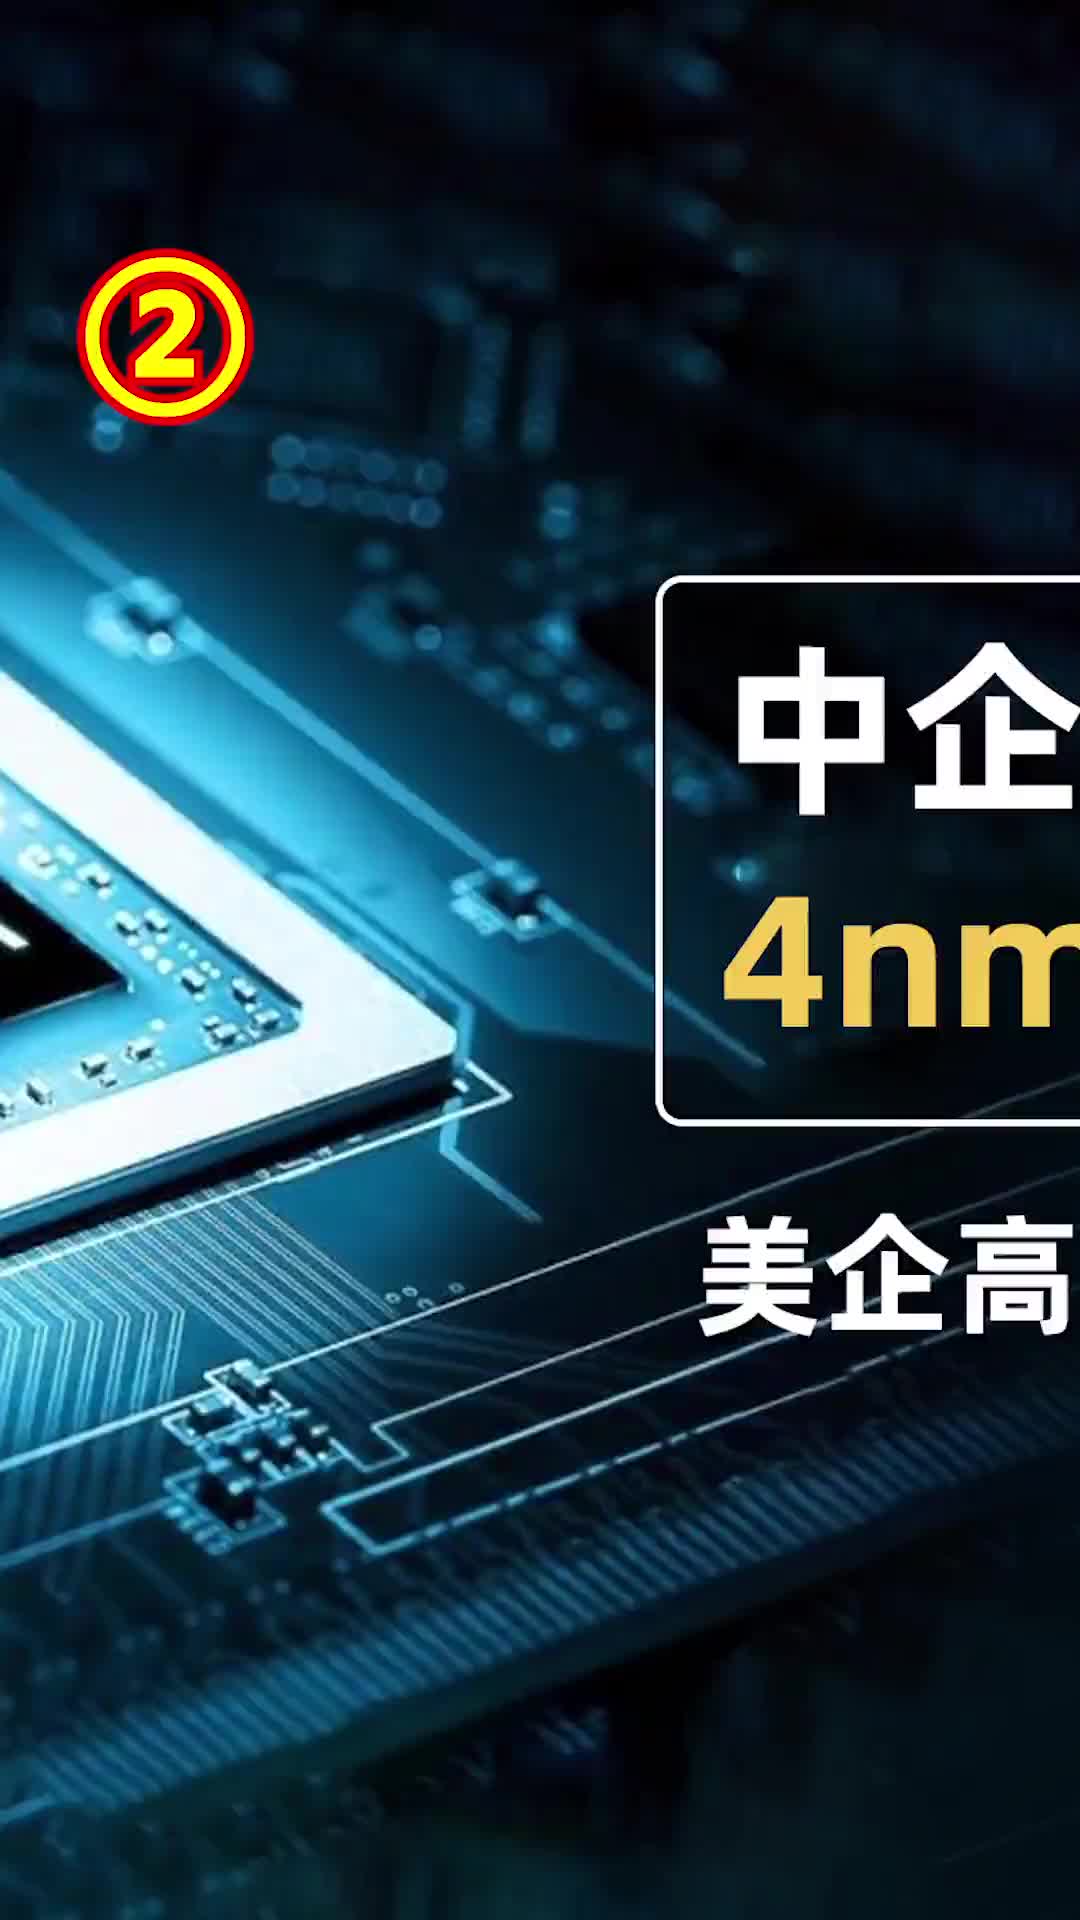 中企再次入局4nm处理器，美企高通地位将消失#科技 #芯片 #华为 